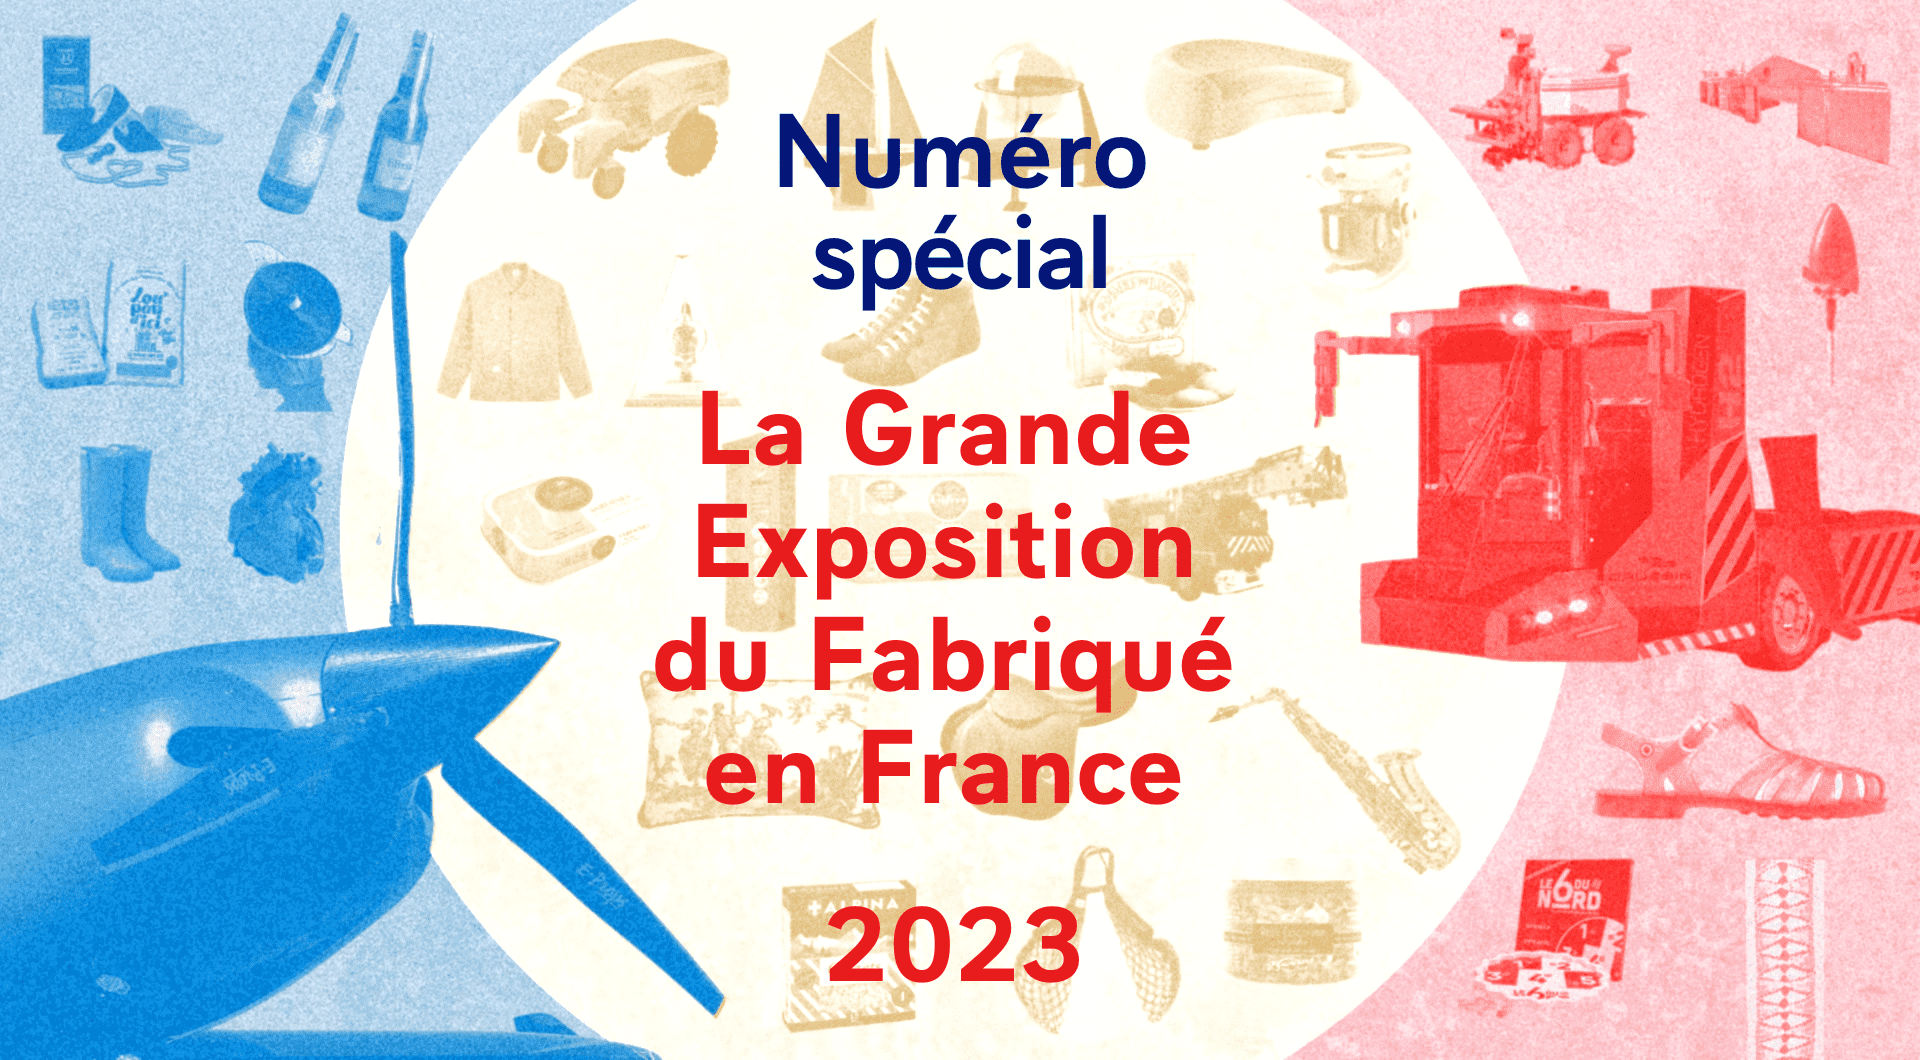 La Grande exposition du Fabriqué en France 2023